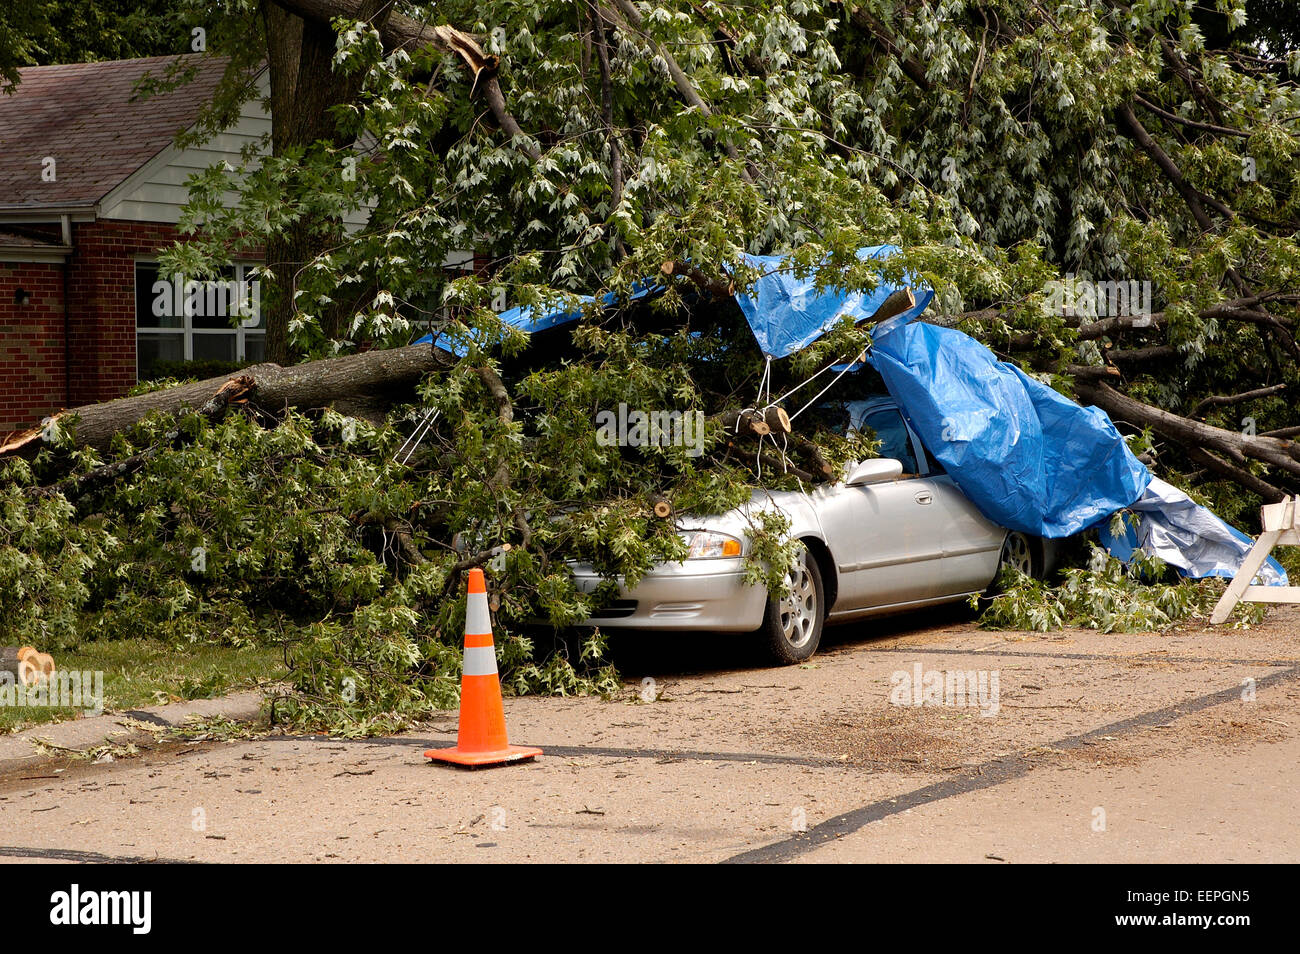 Una scena che è una tempesta con venti alti ha inviato un tronco di albero giù dal precipizio su una vettura, su una strada residenziale Foto Stock